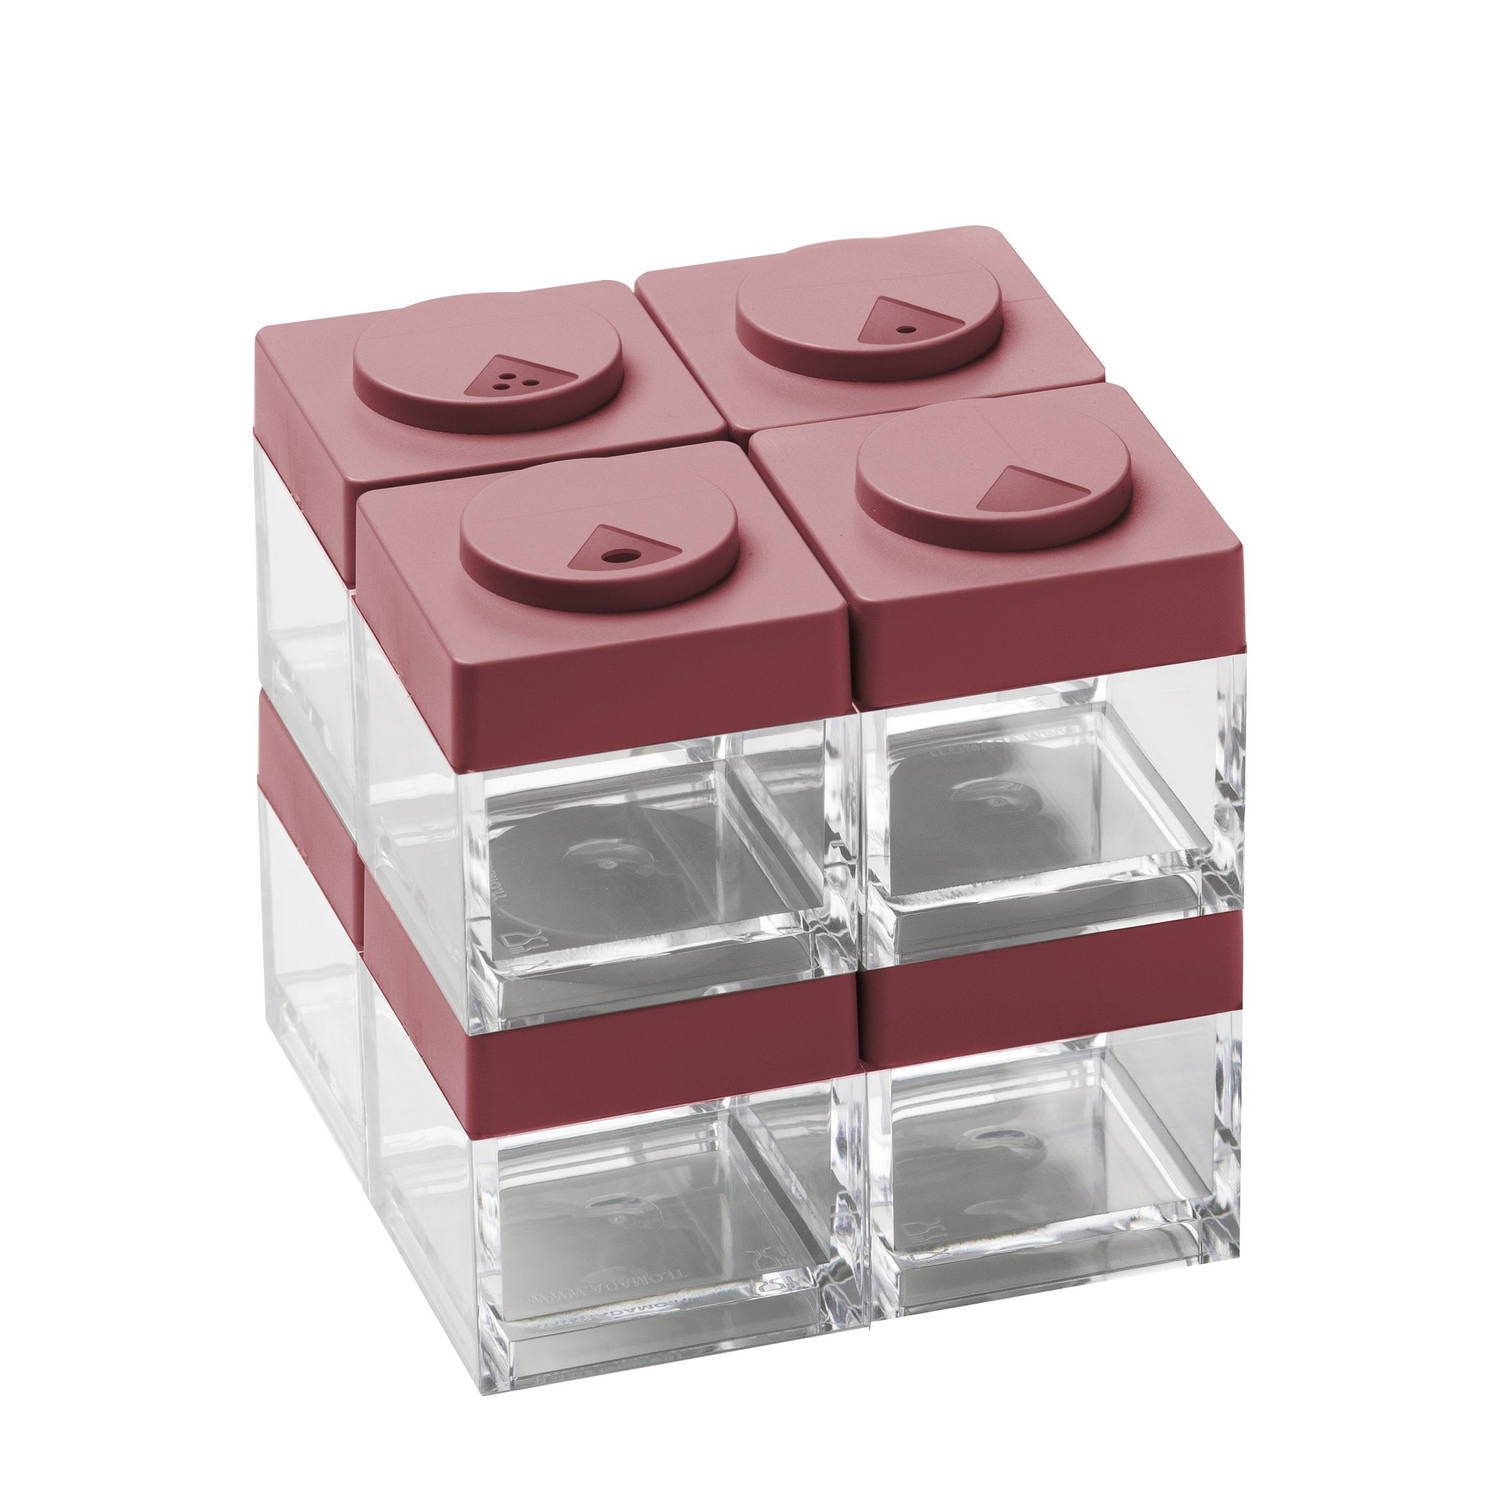 Brickstore Kruidenpotjes met Strooideksel Set van 8 Stuks